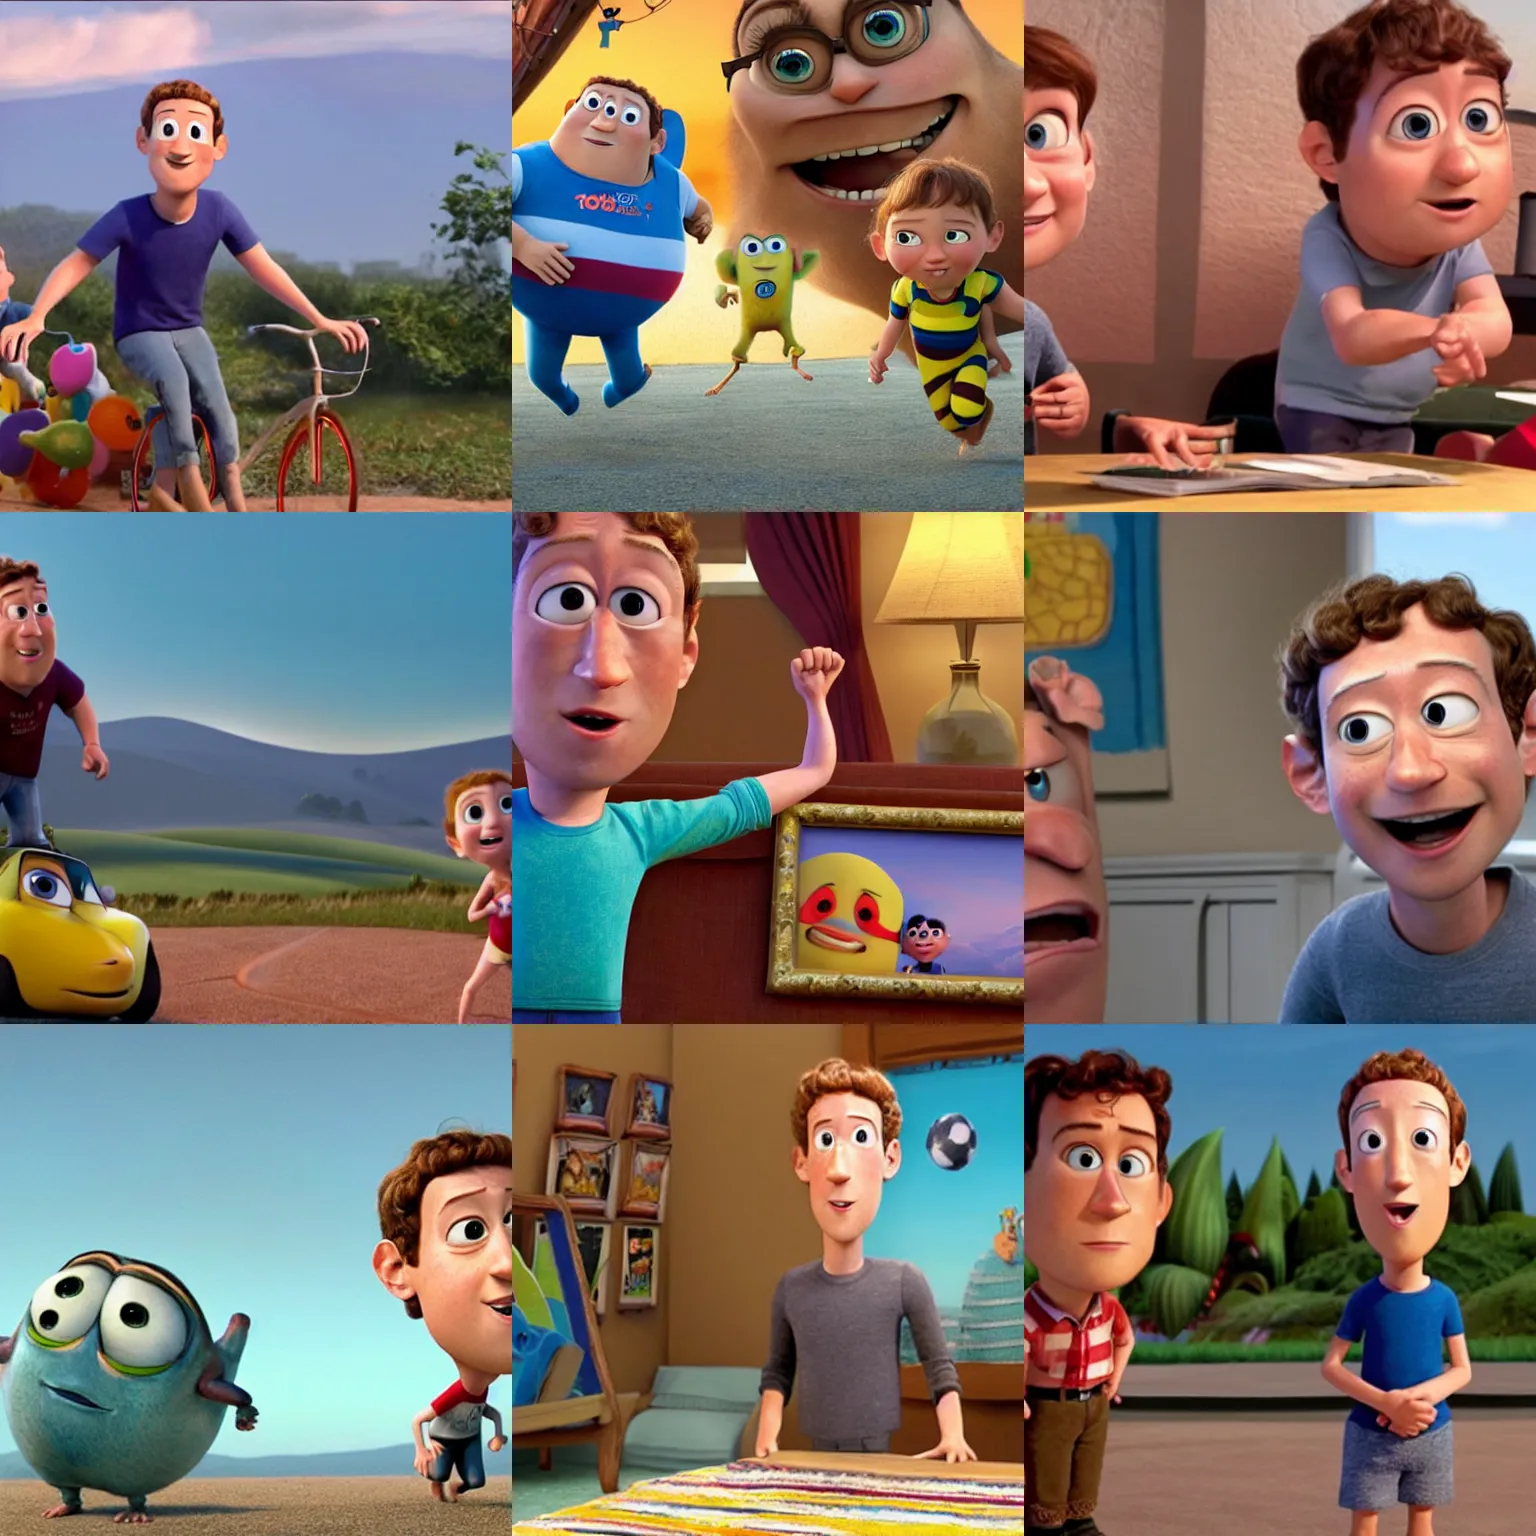 Prompt: Movie still of Mark Zuckerberg in Pixar's Up